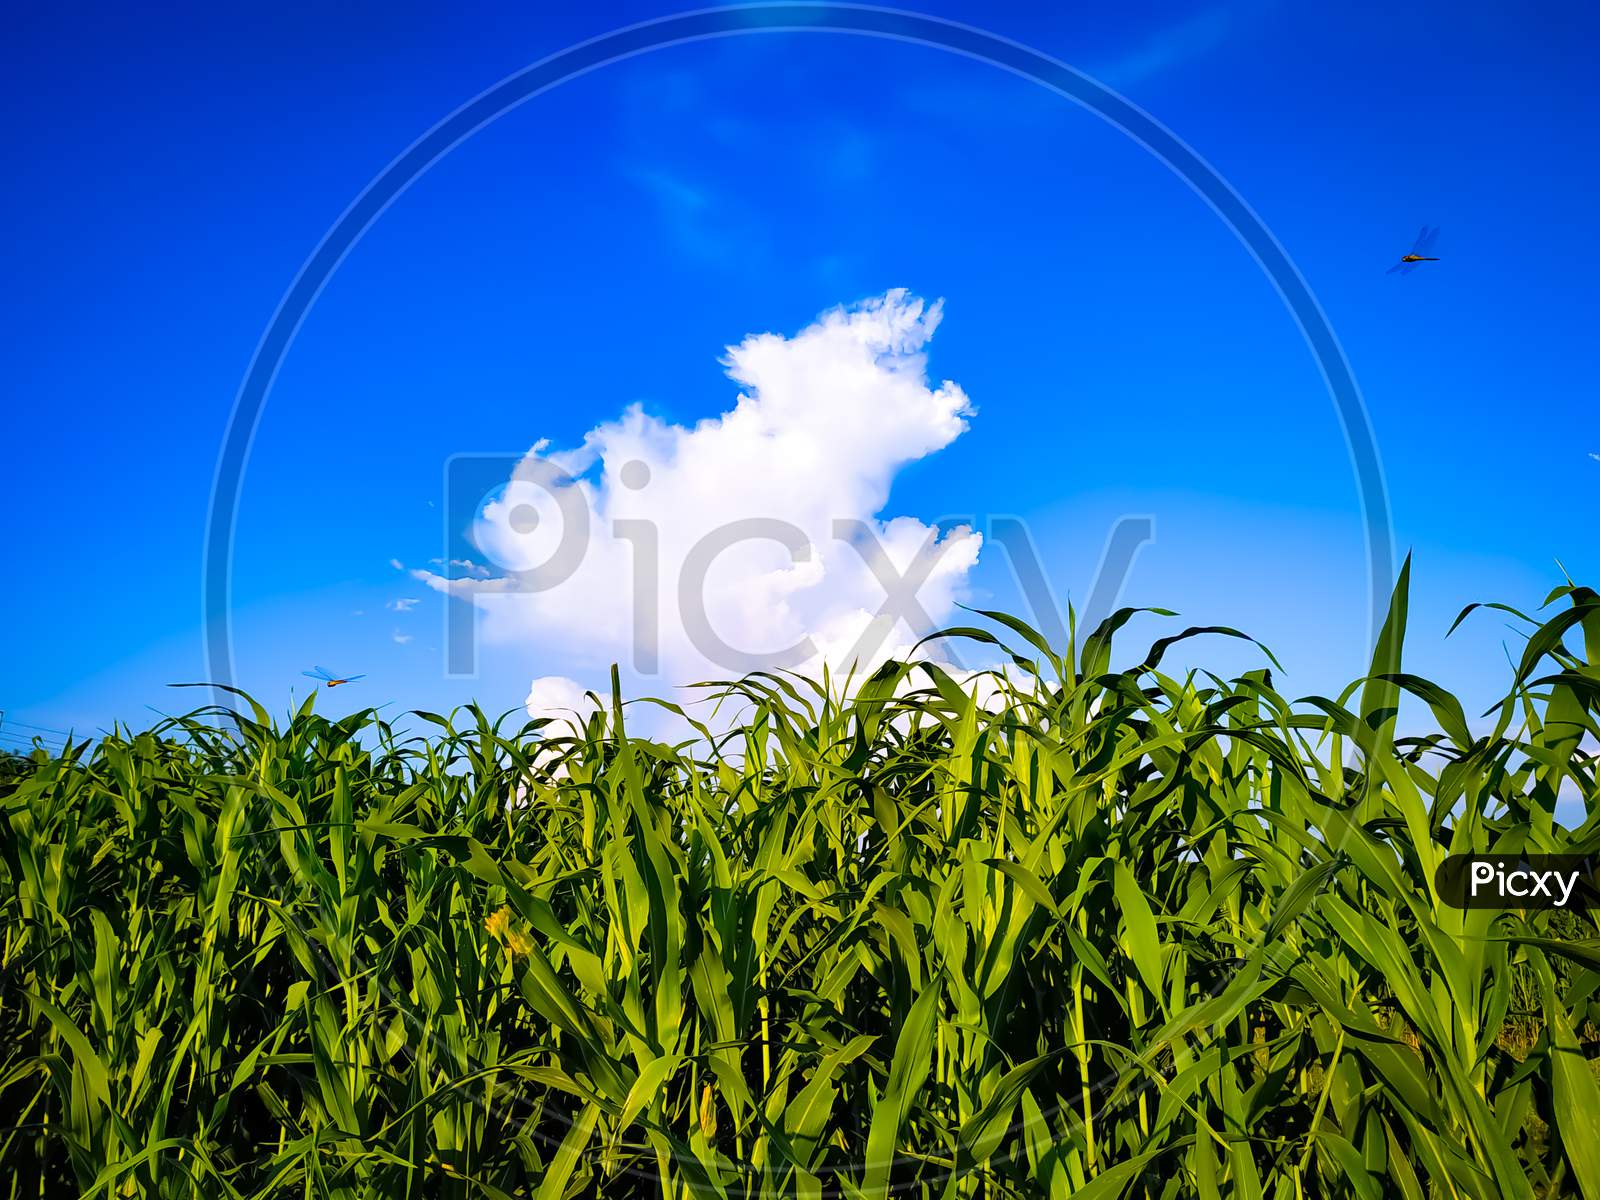 Millet Plants Field Under Blue Sky